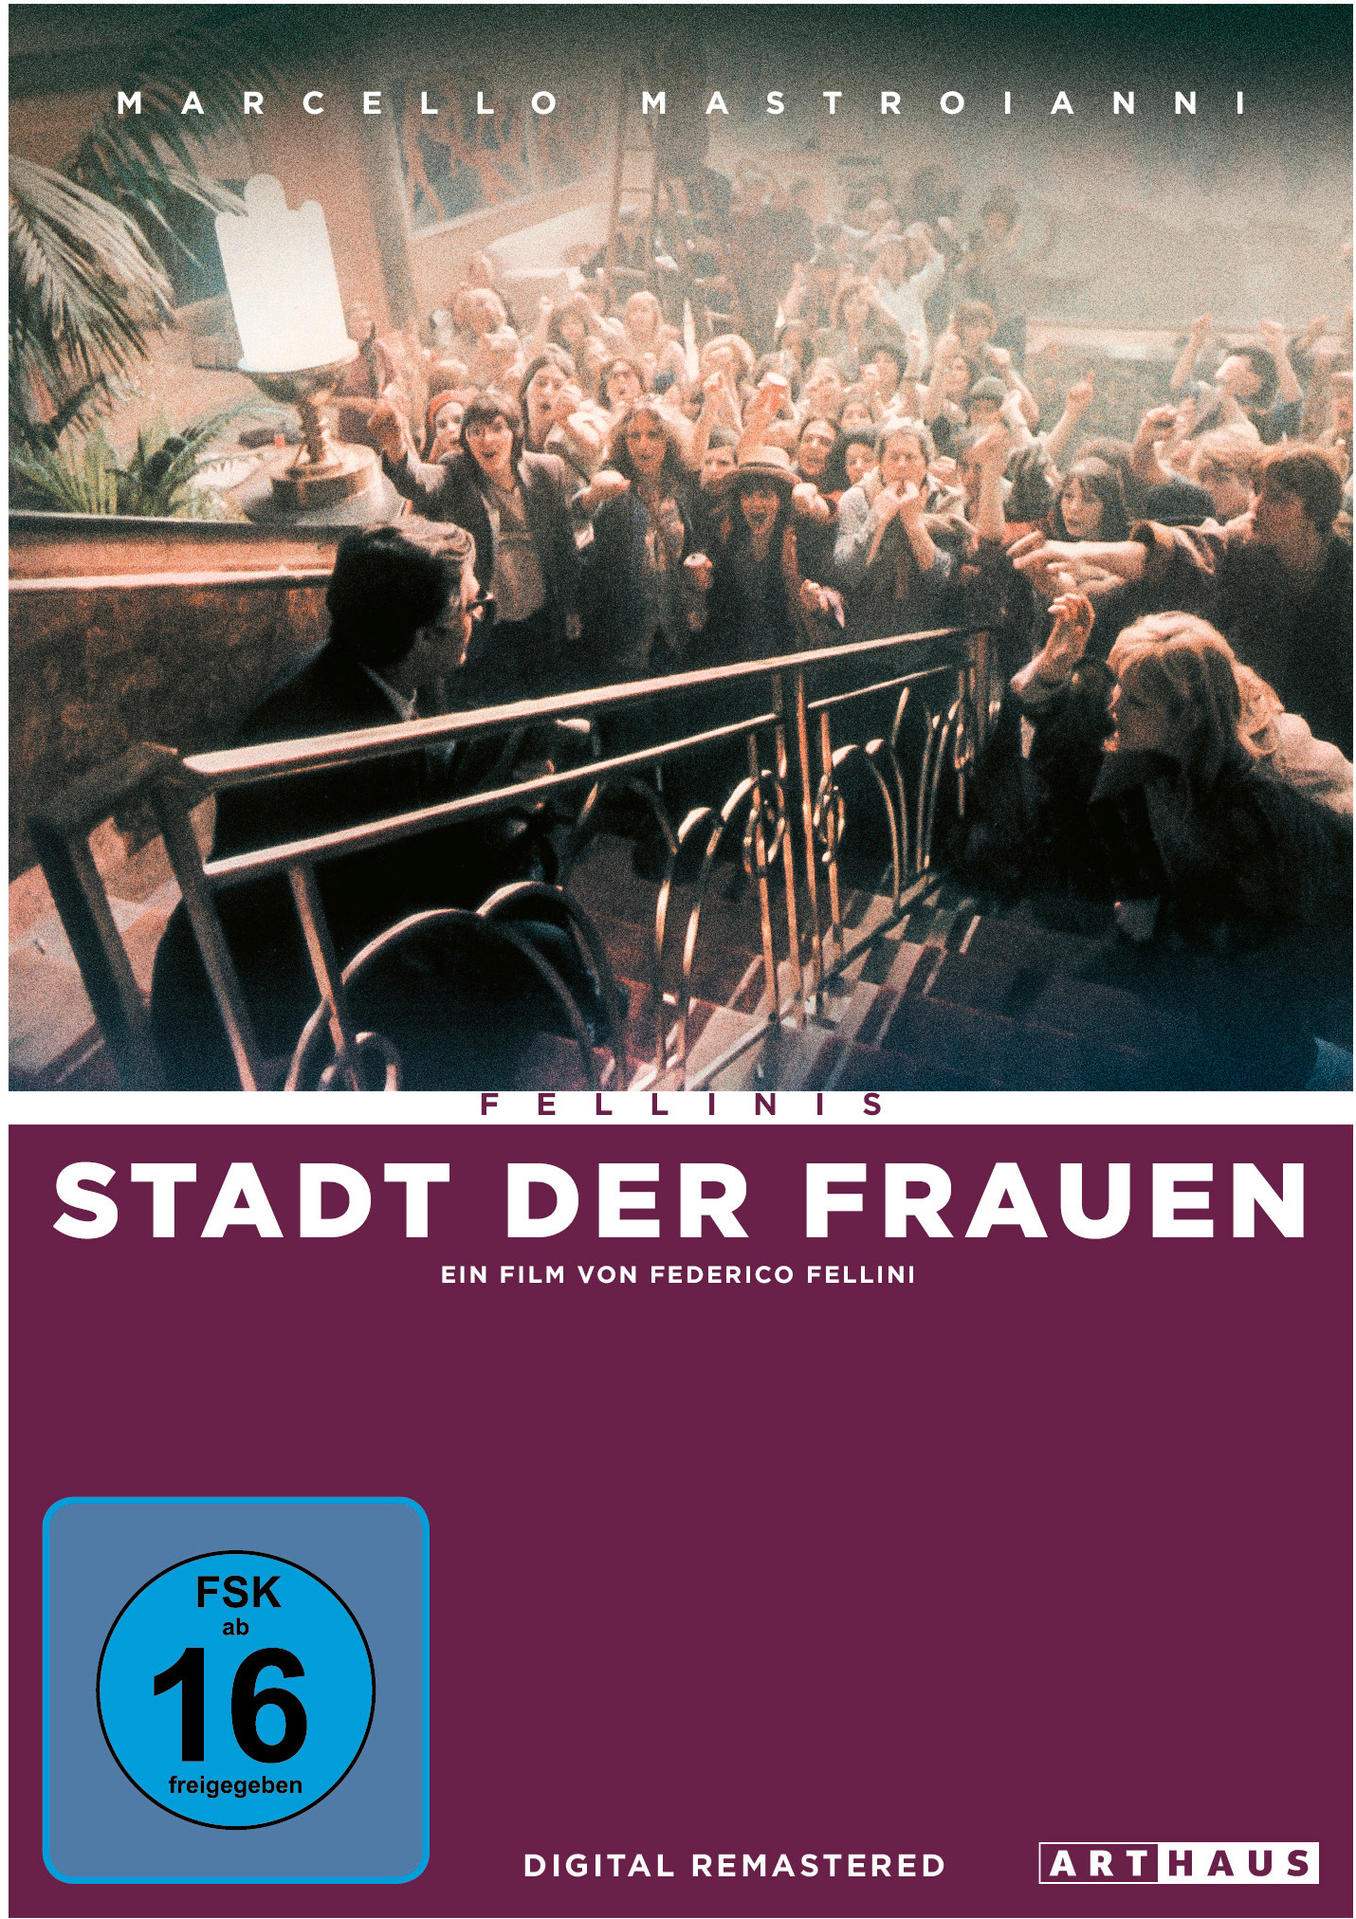 DVD der Stadt Frauen Fellinis